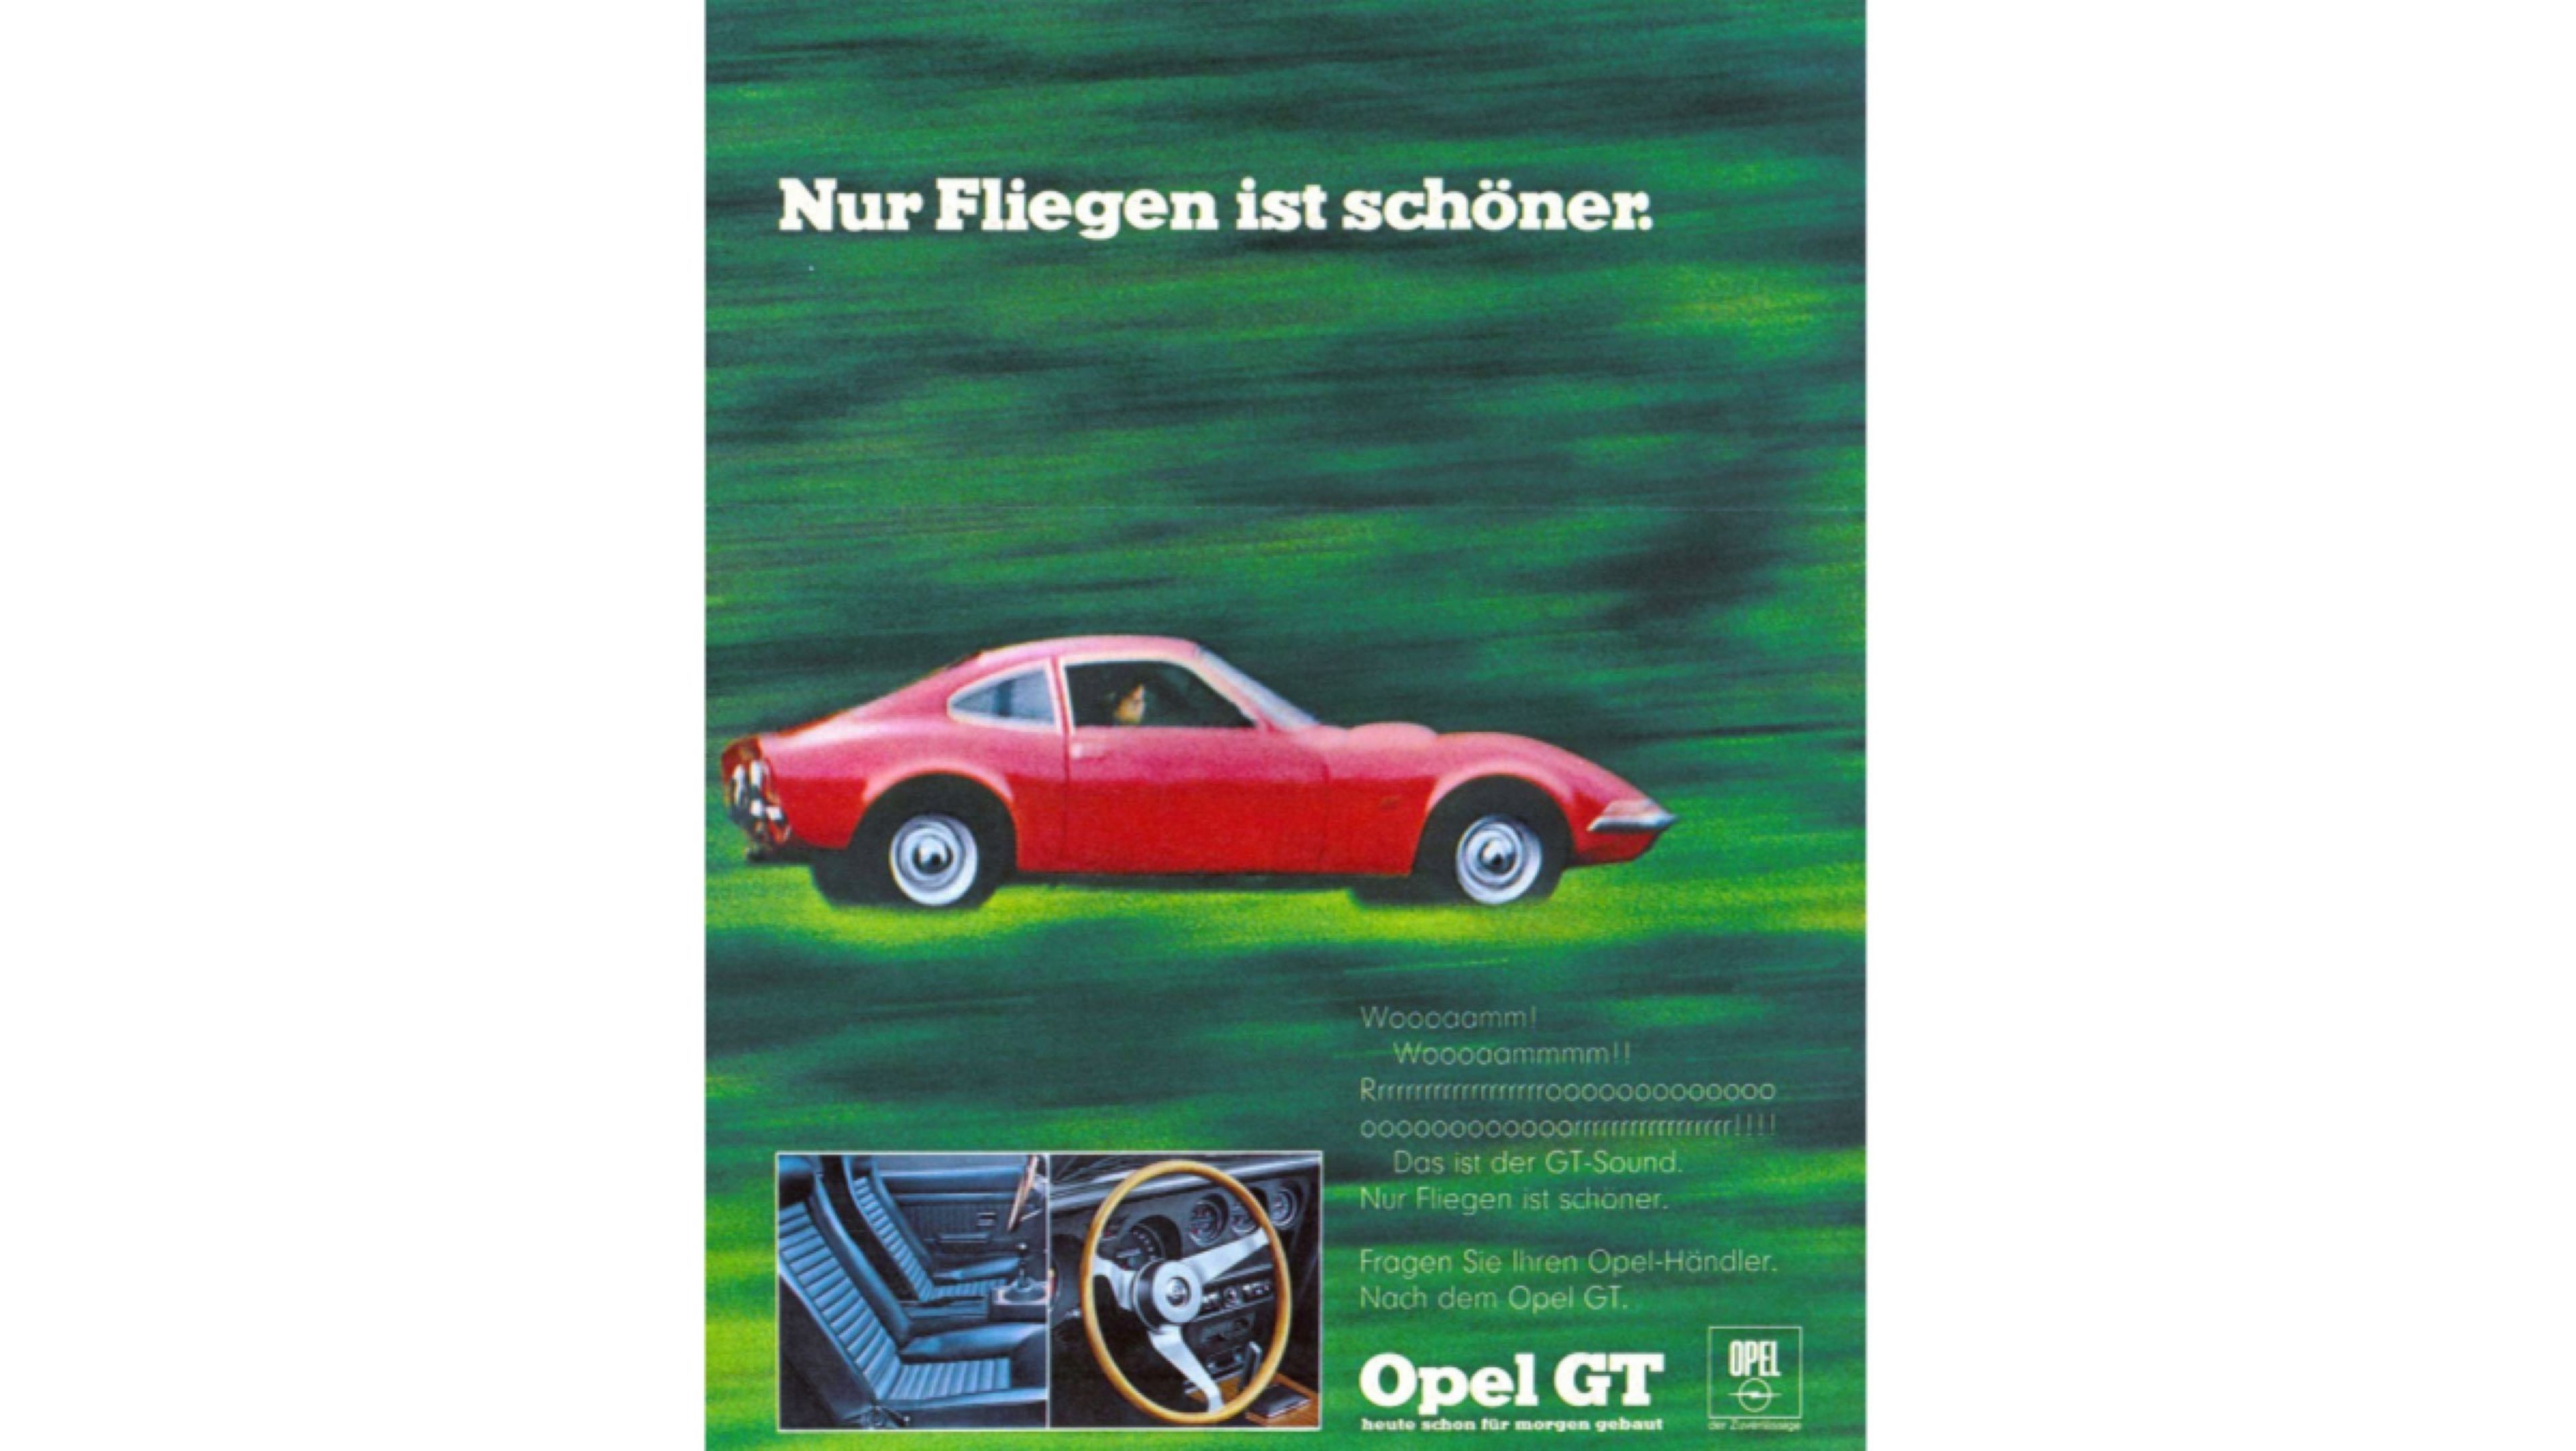 Opel GT publicidad